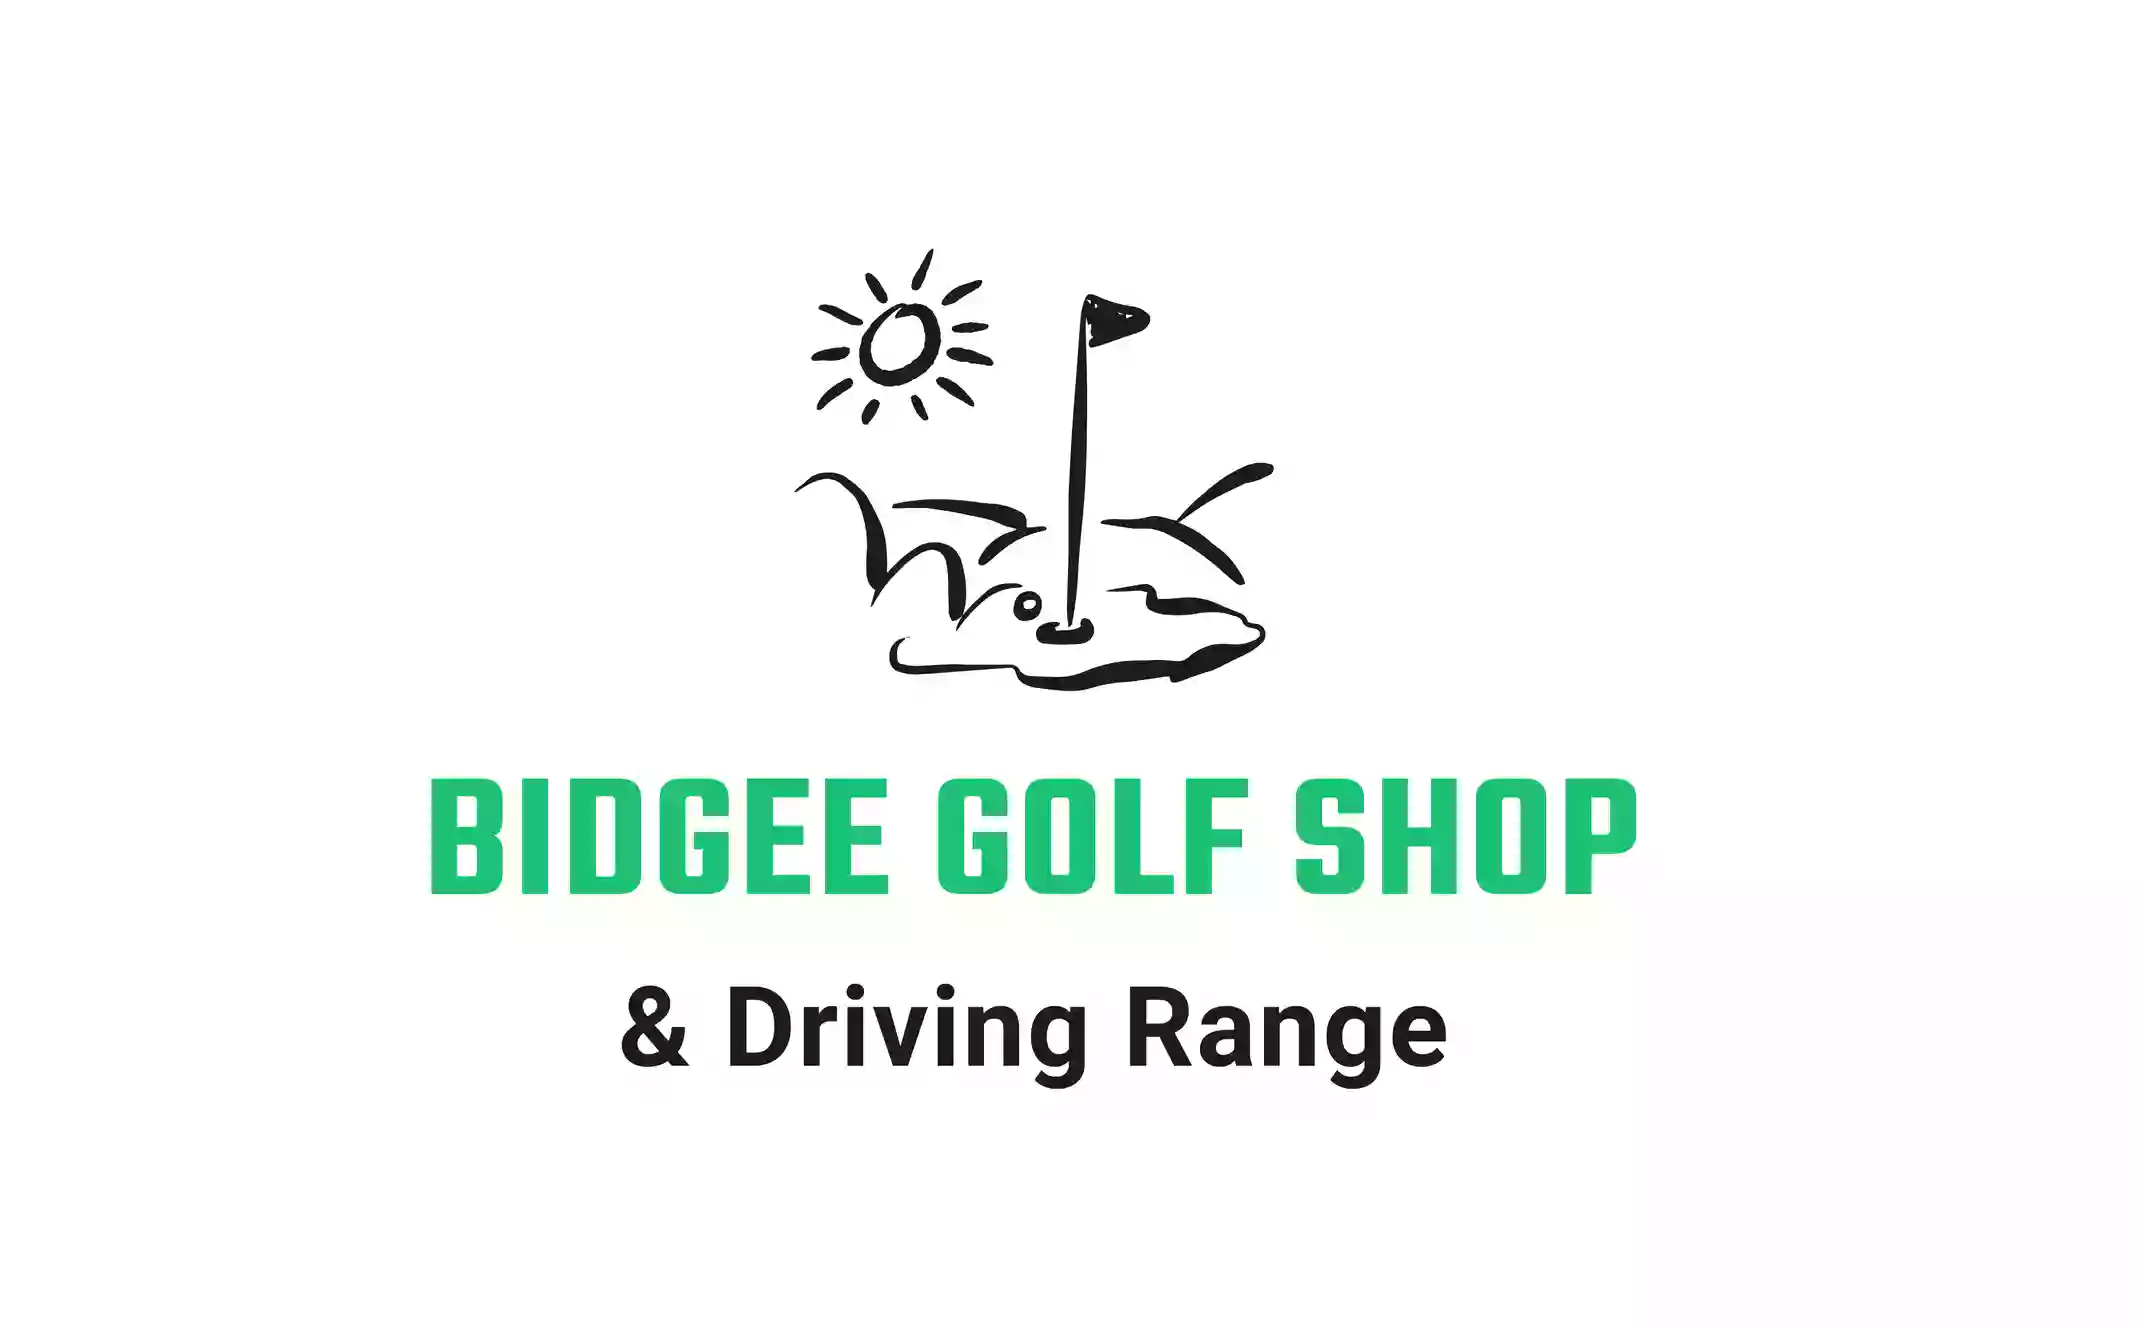 Bidgee Golf Shop